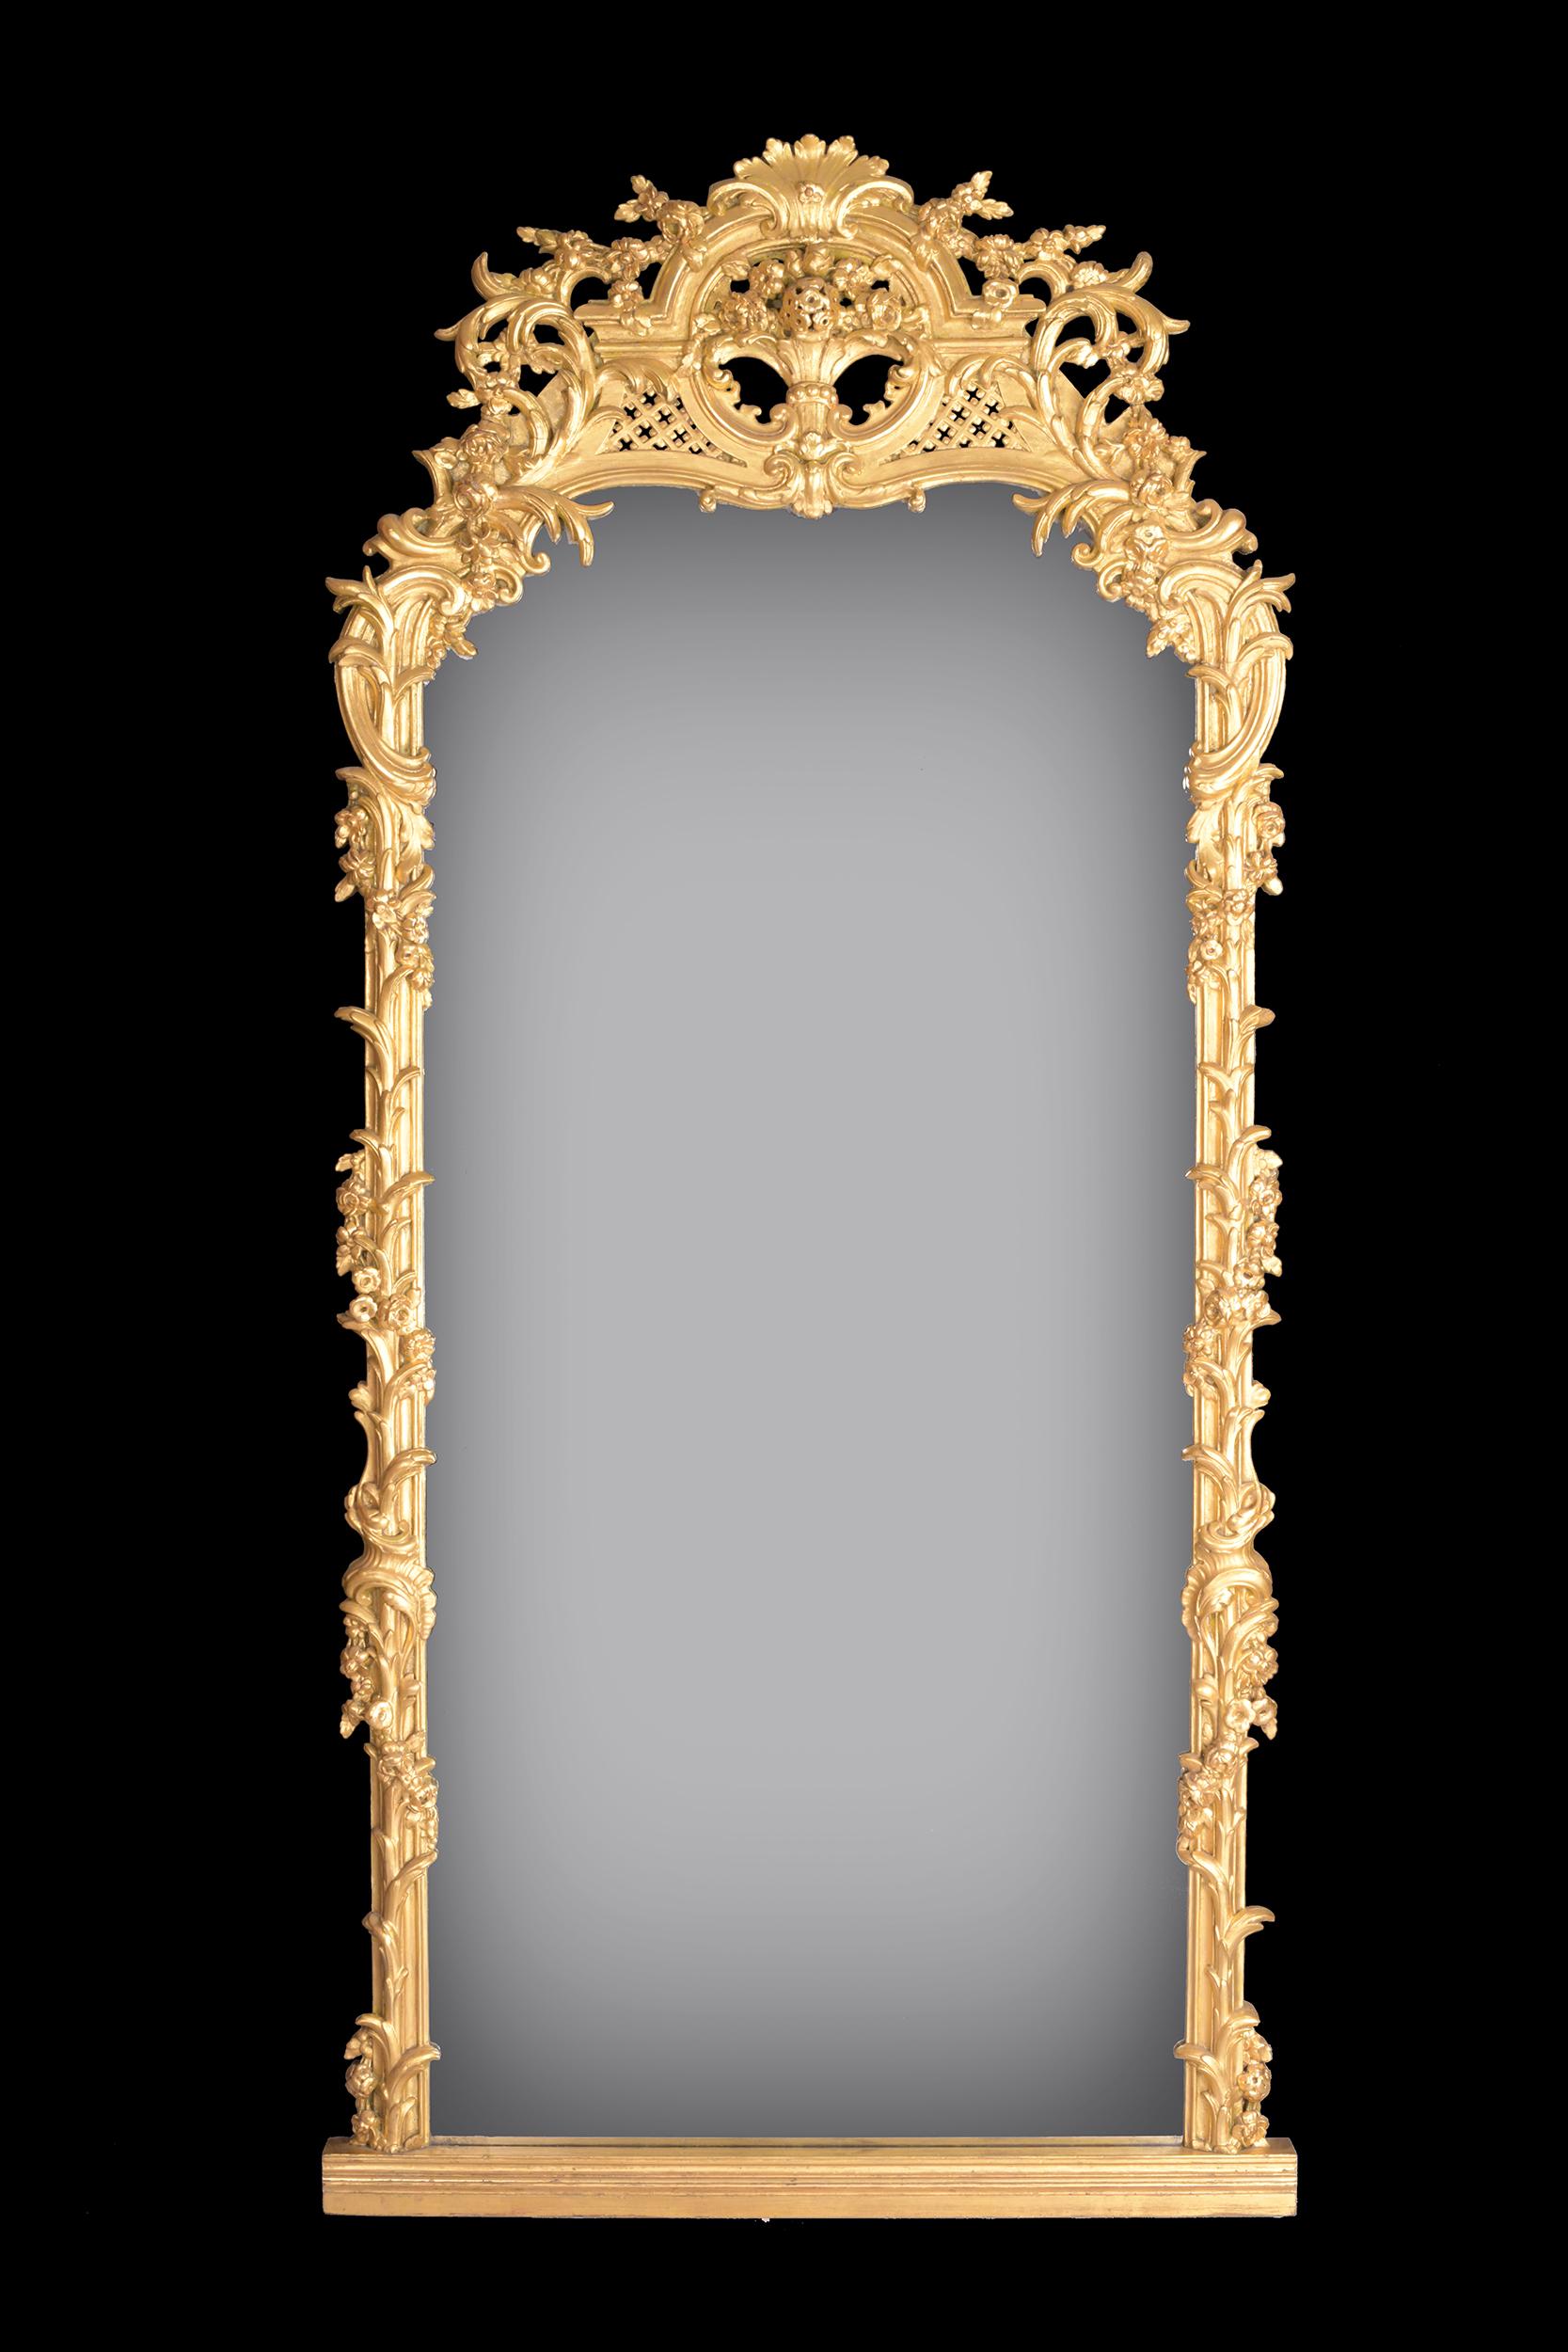 Un très beau et grand miroir doré, de forme rectangulaire arquée, entouré d'une feuille élaborée et d'une volute, surmonté d'une volute et d'une coquille centrale, élevé sur une plate-forme.

Circa 1880

Anglais.

  